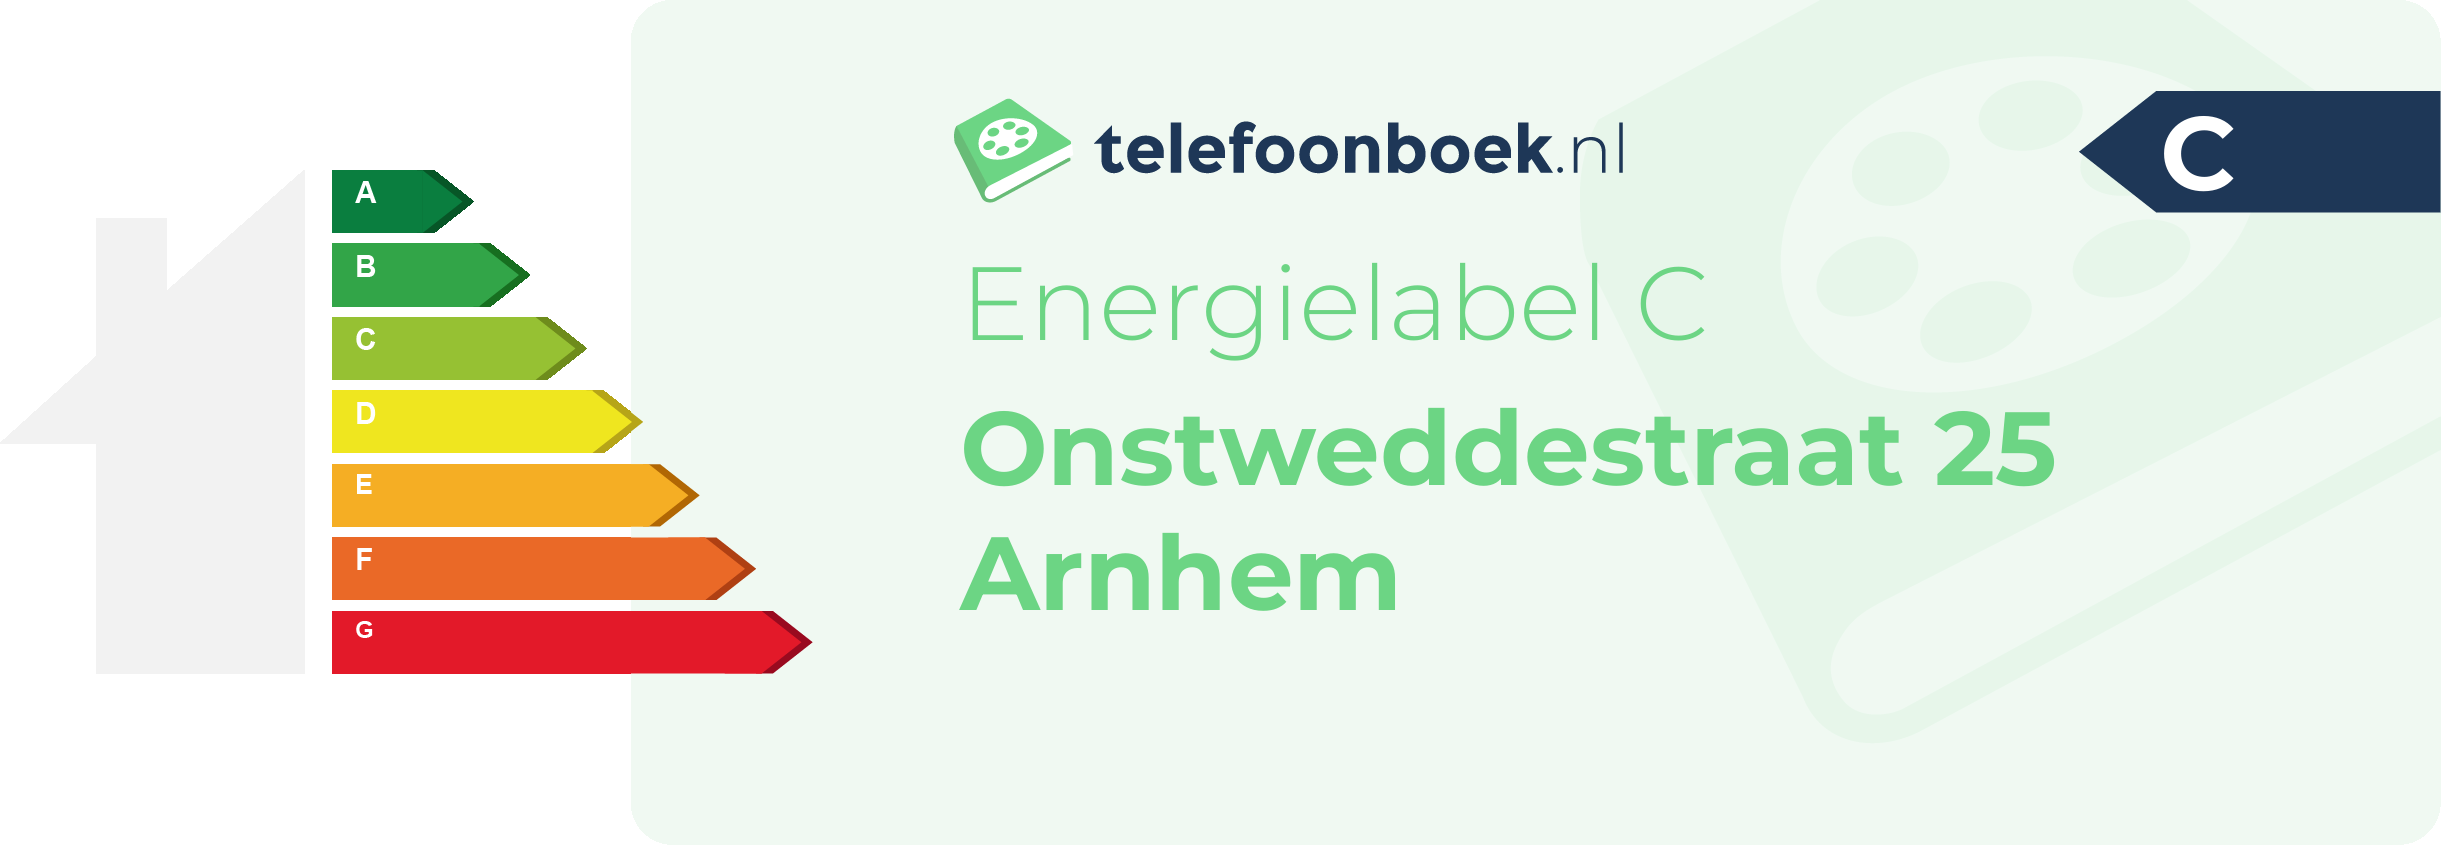 Energielabel Onstweddestraat 25 Arnhem